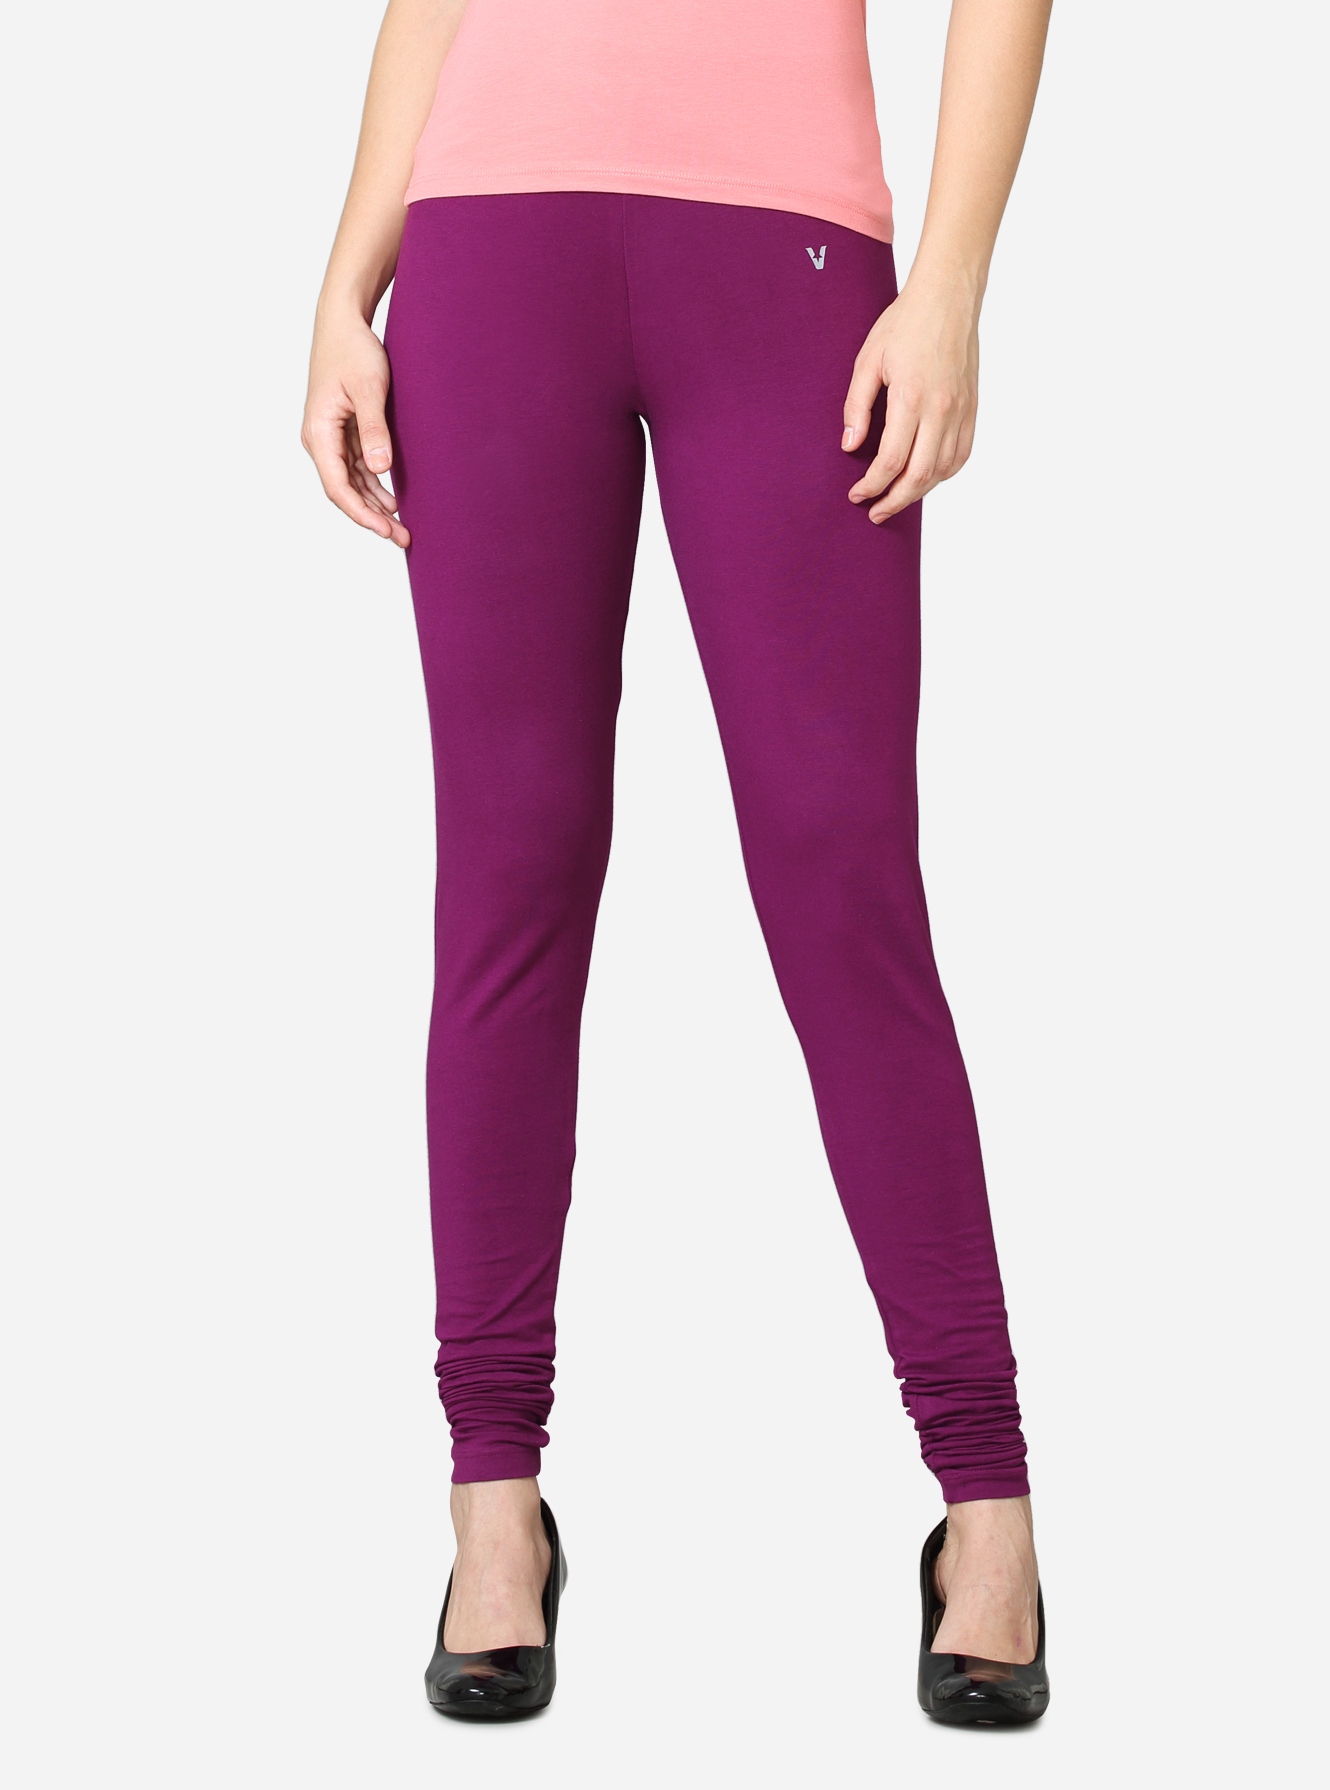 Dark Purple Solid Leggings - Selling Fast at Pantaloons.com